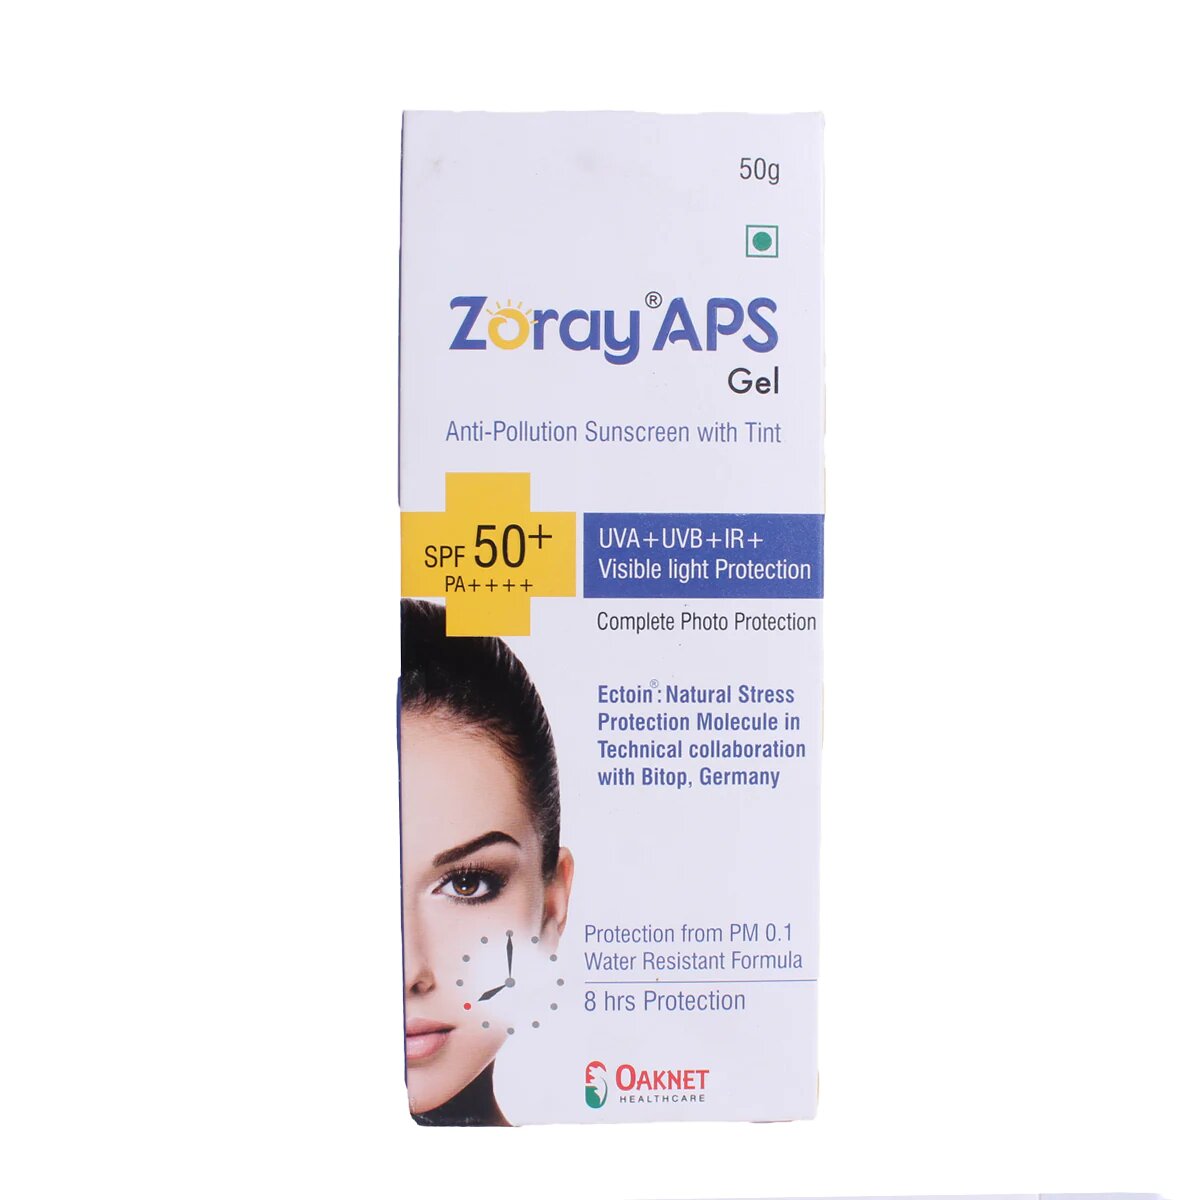 Zoray APS Gel Sunscreen SPF 50+ by oaknet